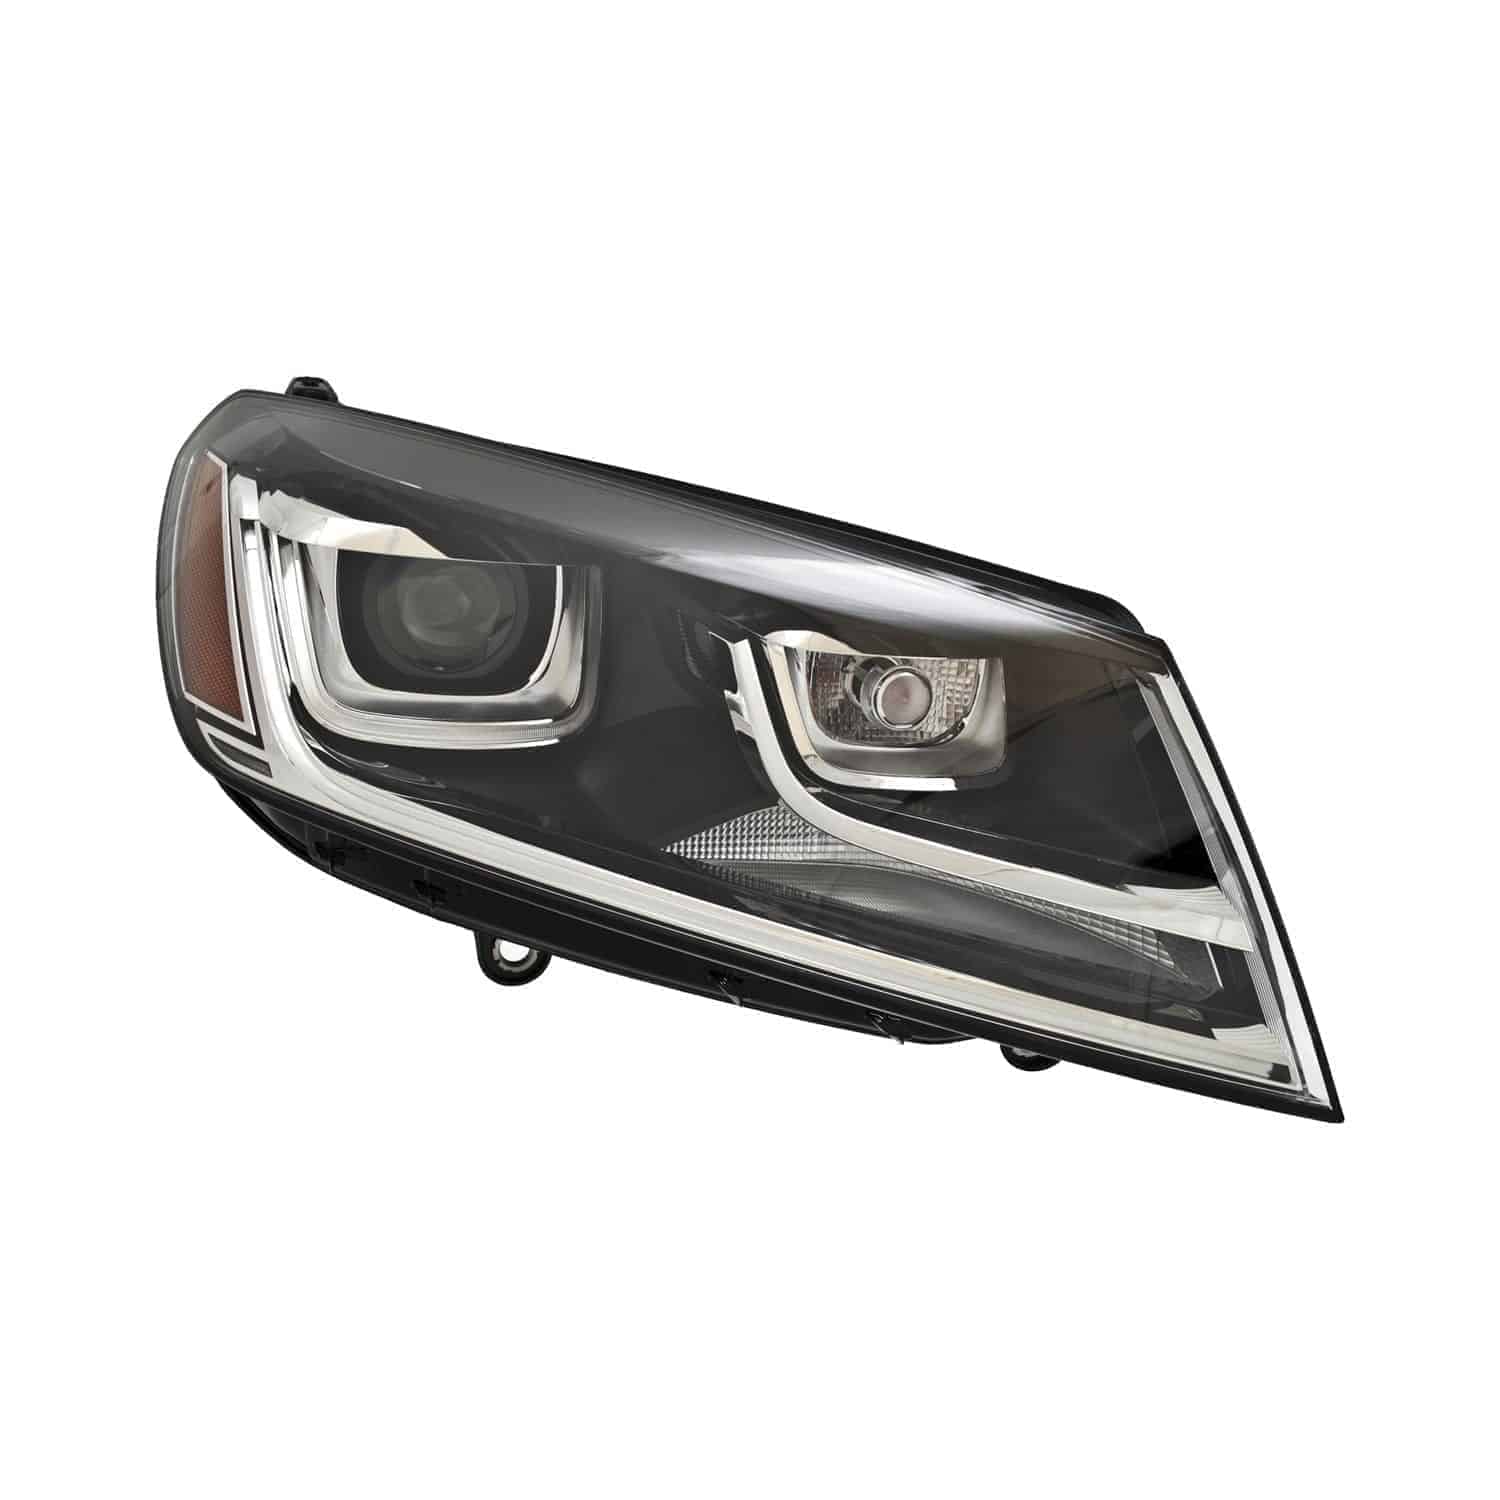 VW2519120 Front Light Headlight Lens & Housing Passenger Side